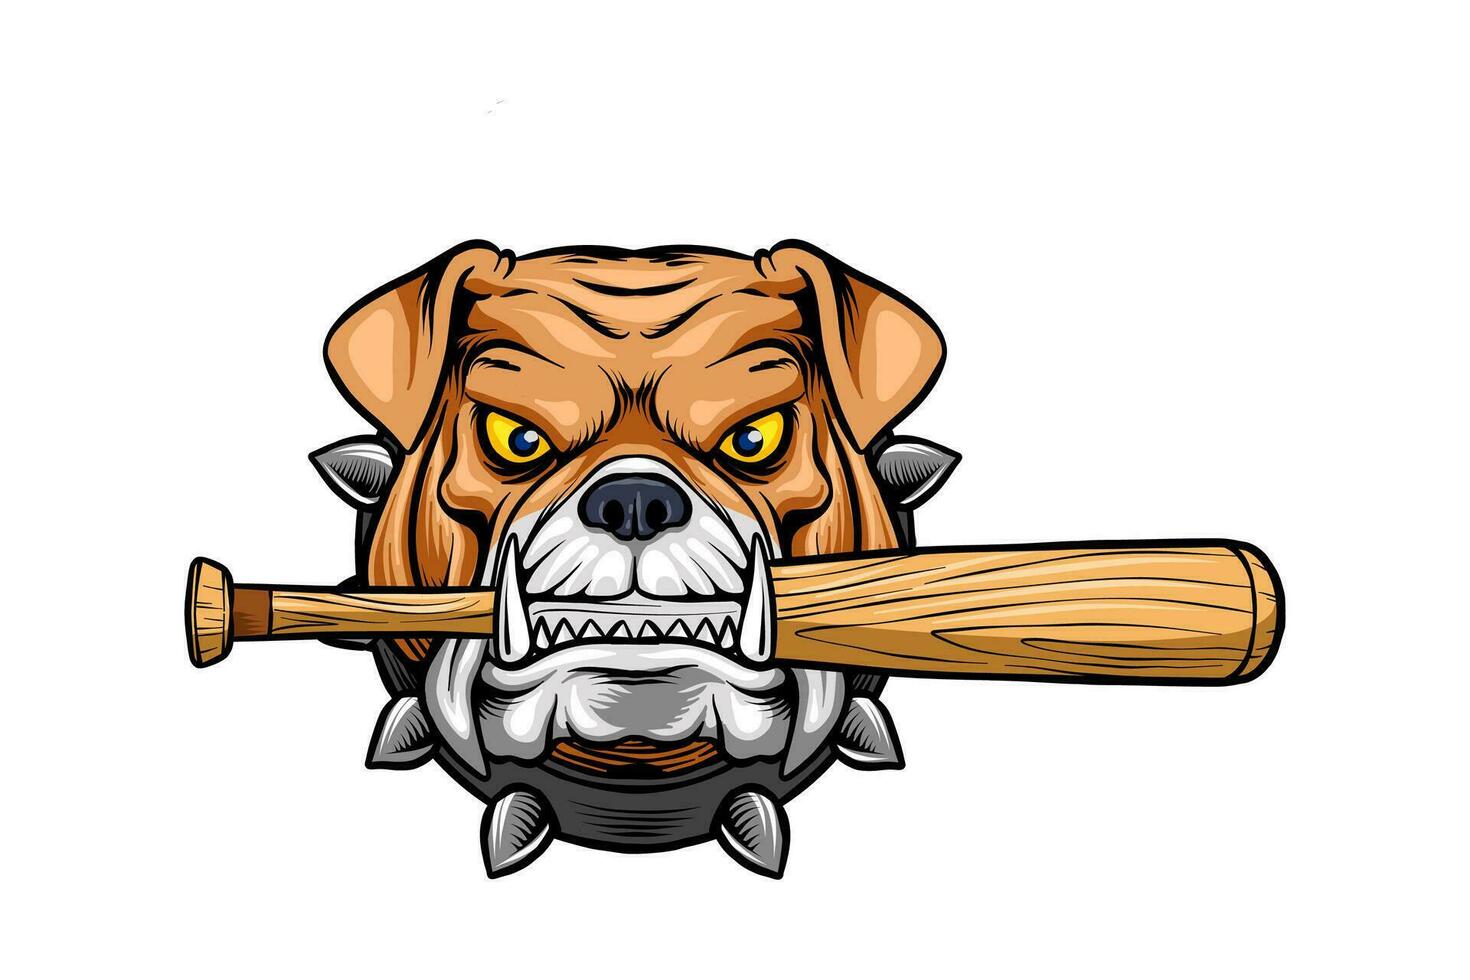 vektor illustration av en bulldogg huvud bitande en baseboll fladdermus mycket allvarligt,